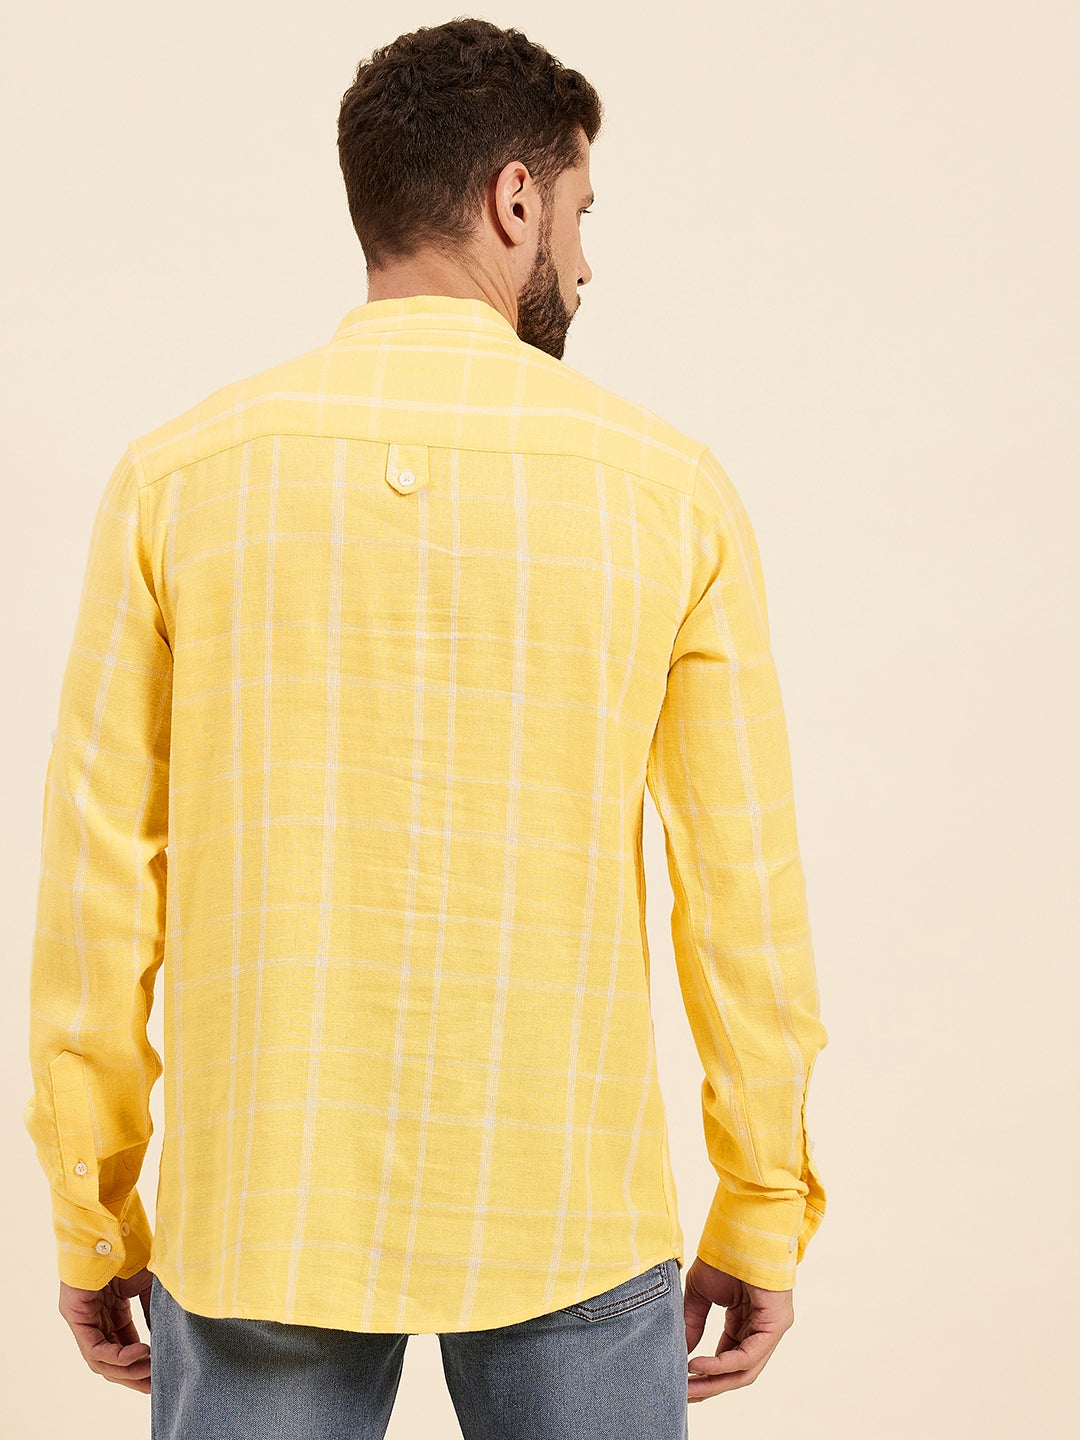 Men Yellow & White Check Roll-Up Sleeves Kurta Shirt